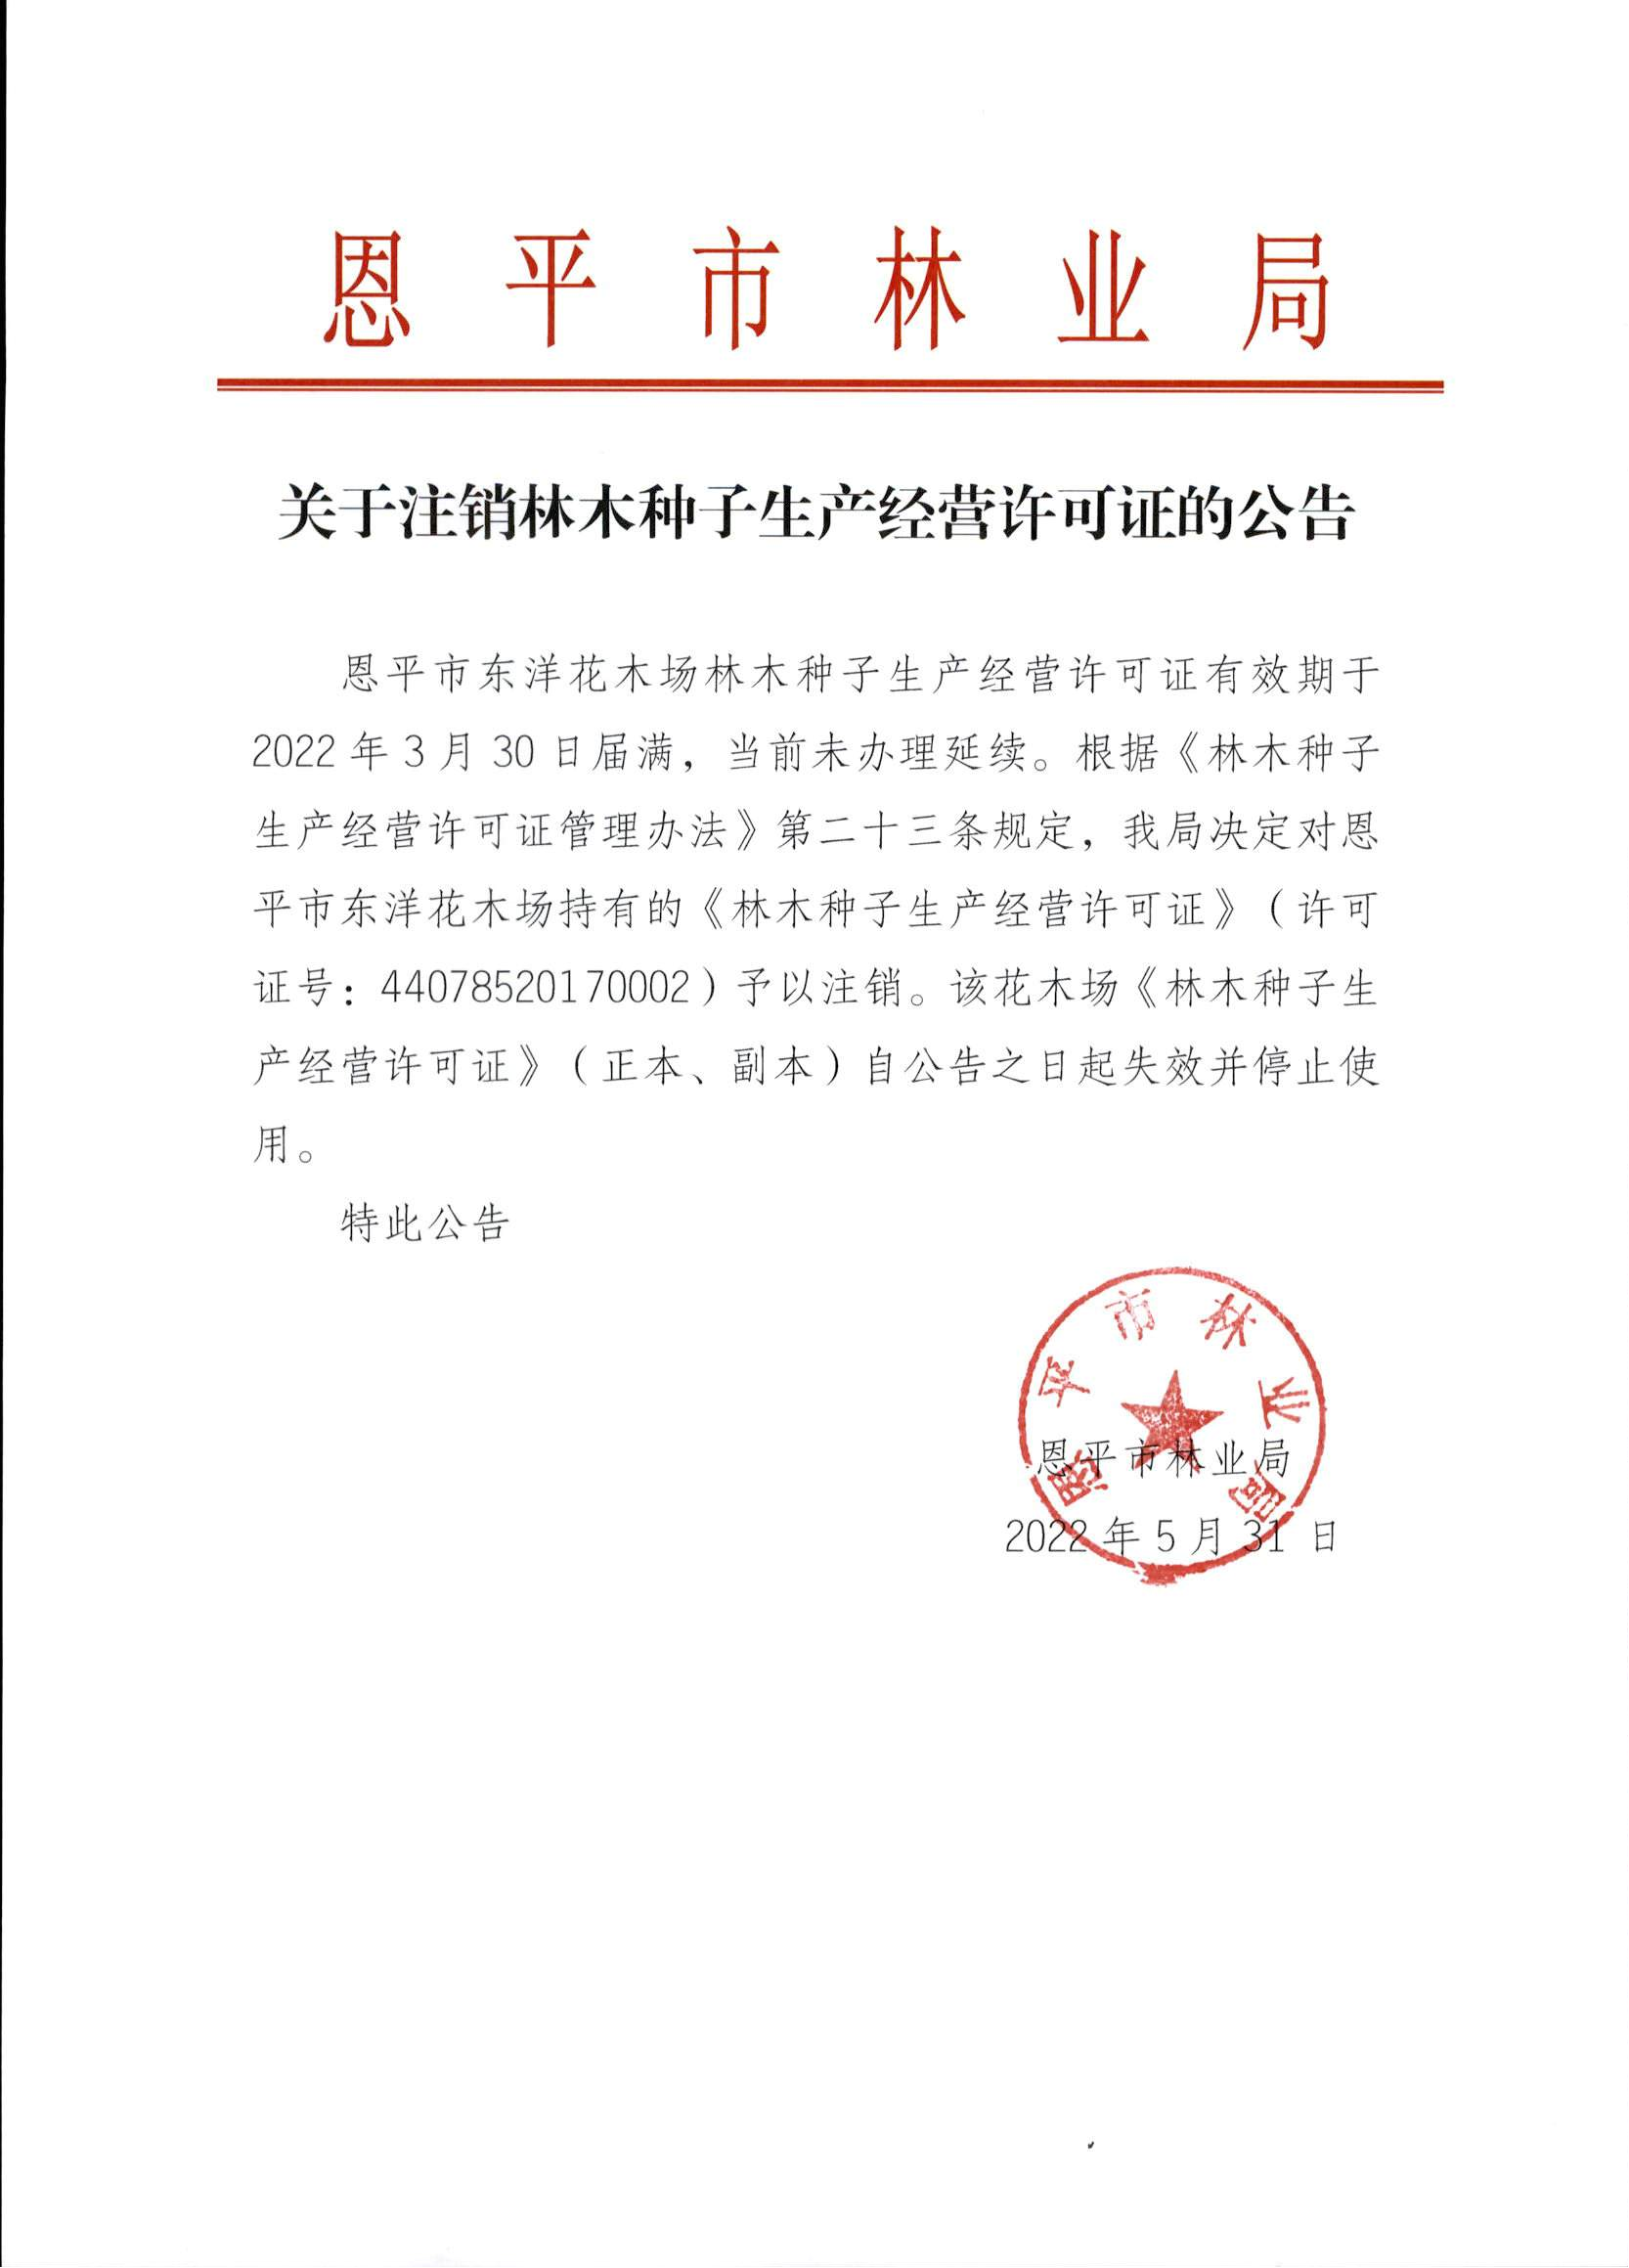 关于注销林木种子生产经营许可证的公告（东洋）_00(1).png